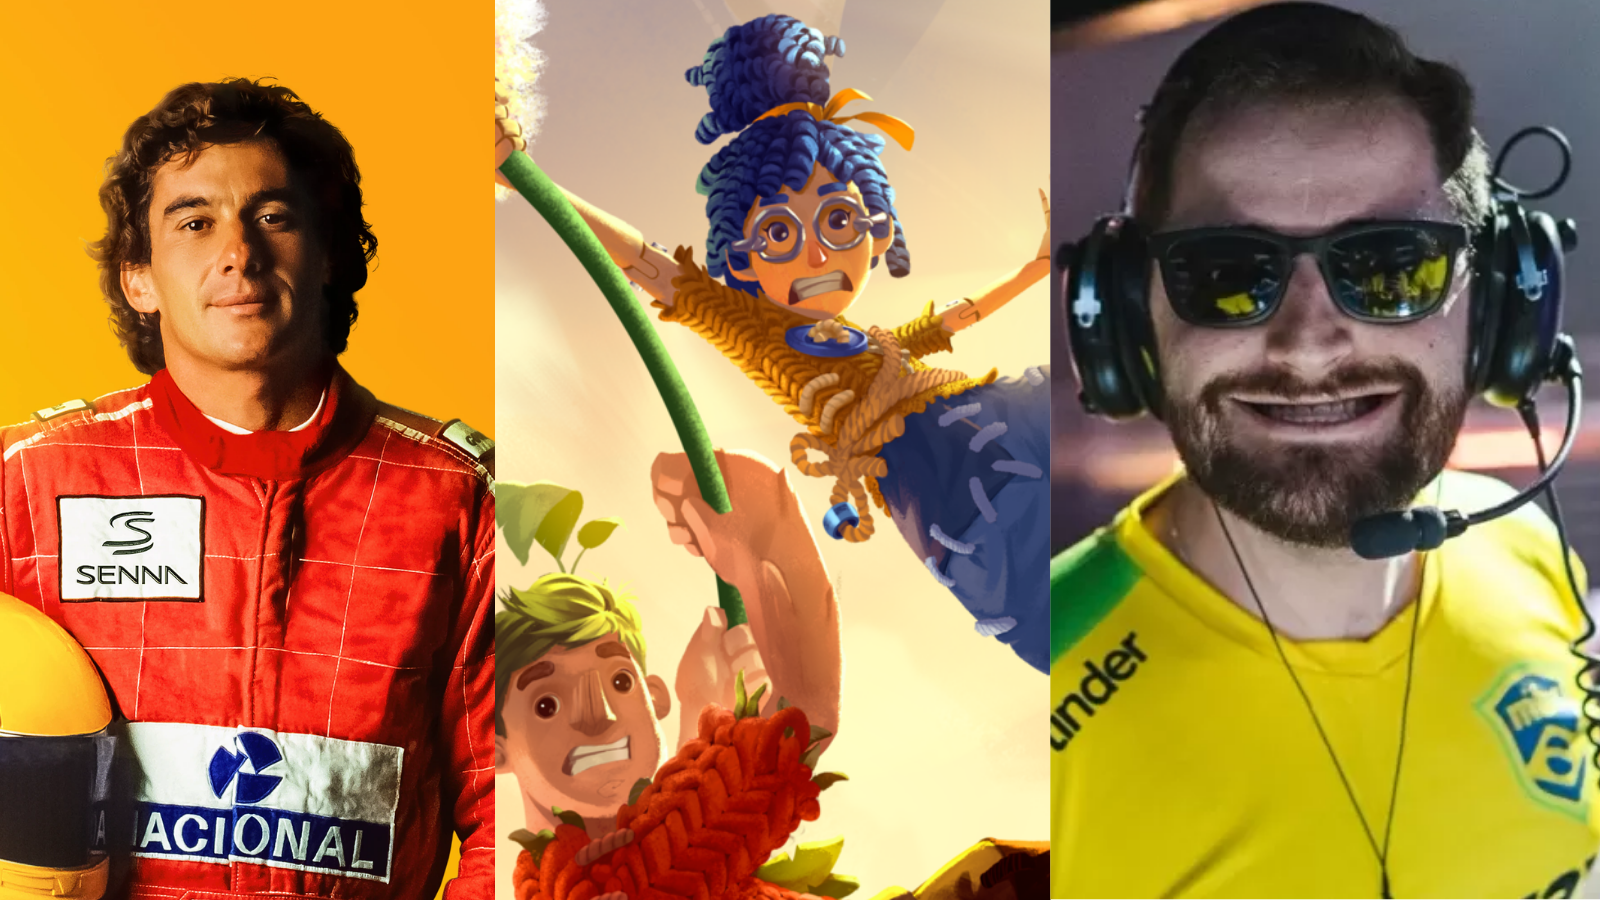 Conheça os ganhadores do Brazil Game Awards 2020 - Lance!